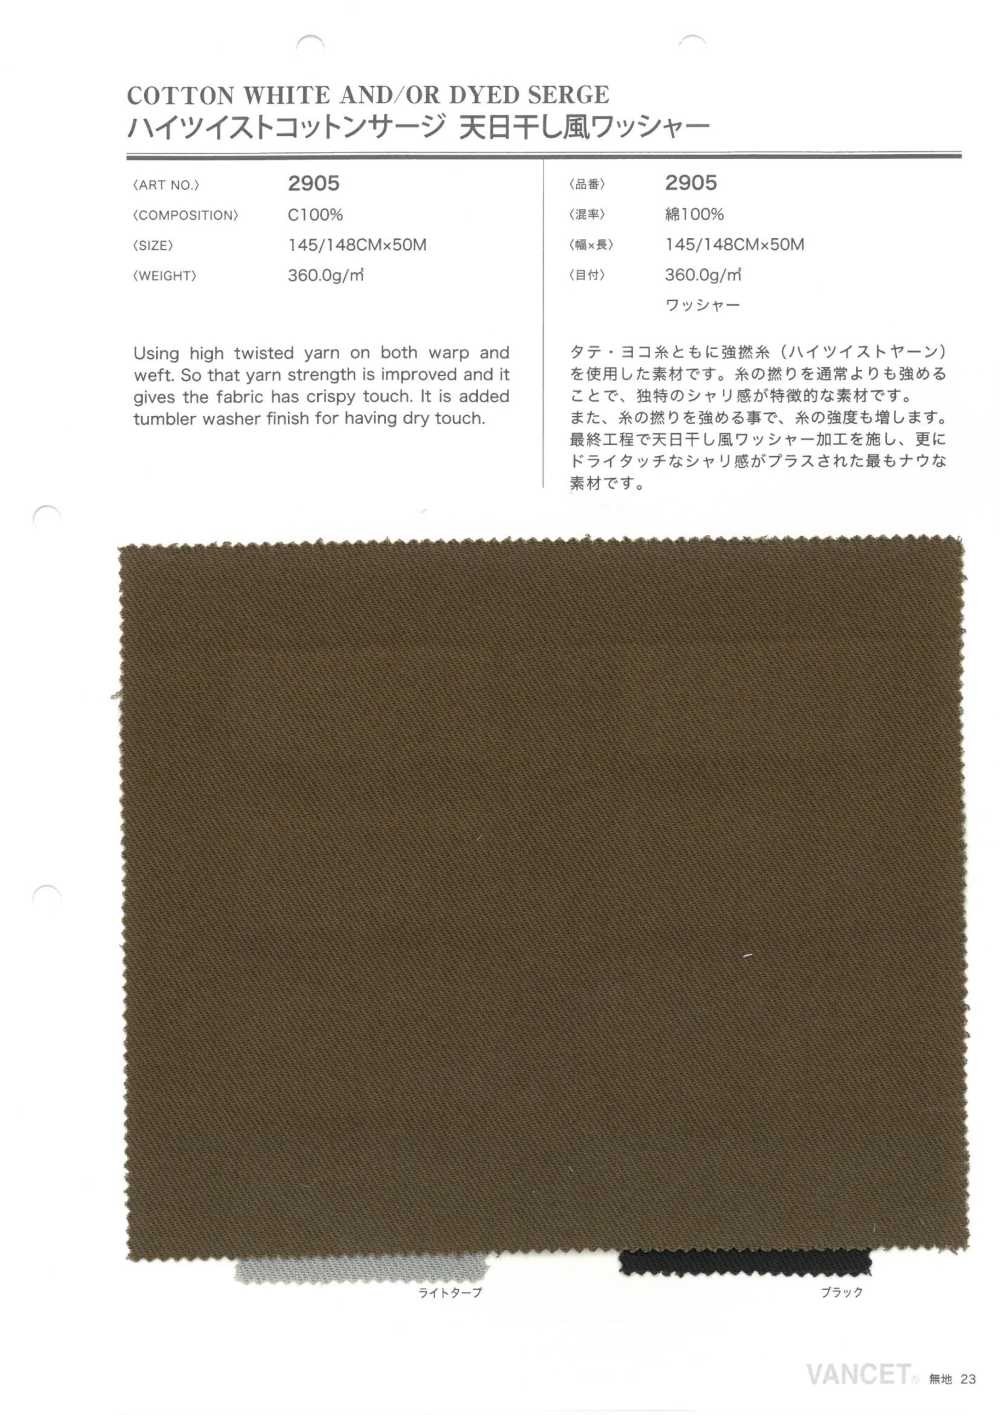 2905 Traitement De Lavage Séché Au Soleil En Sergé De Coton Hautement Torsadé[Fabrication De Textile] VANCET